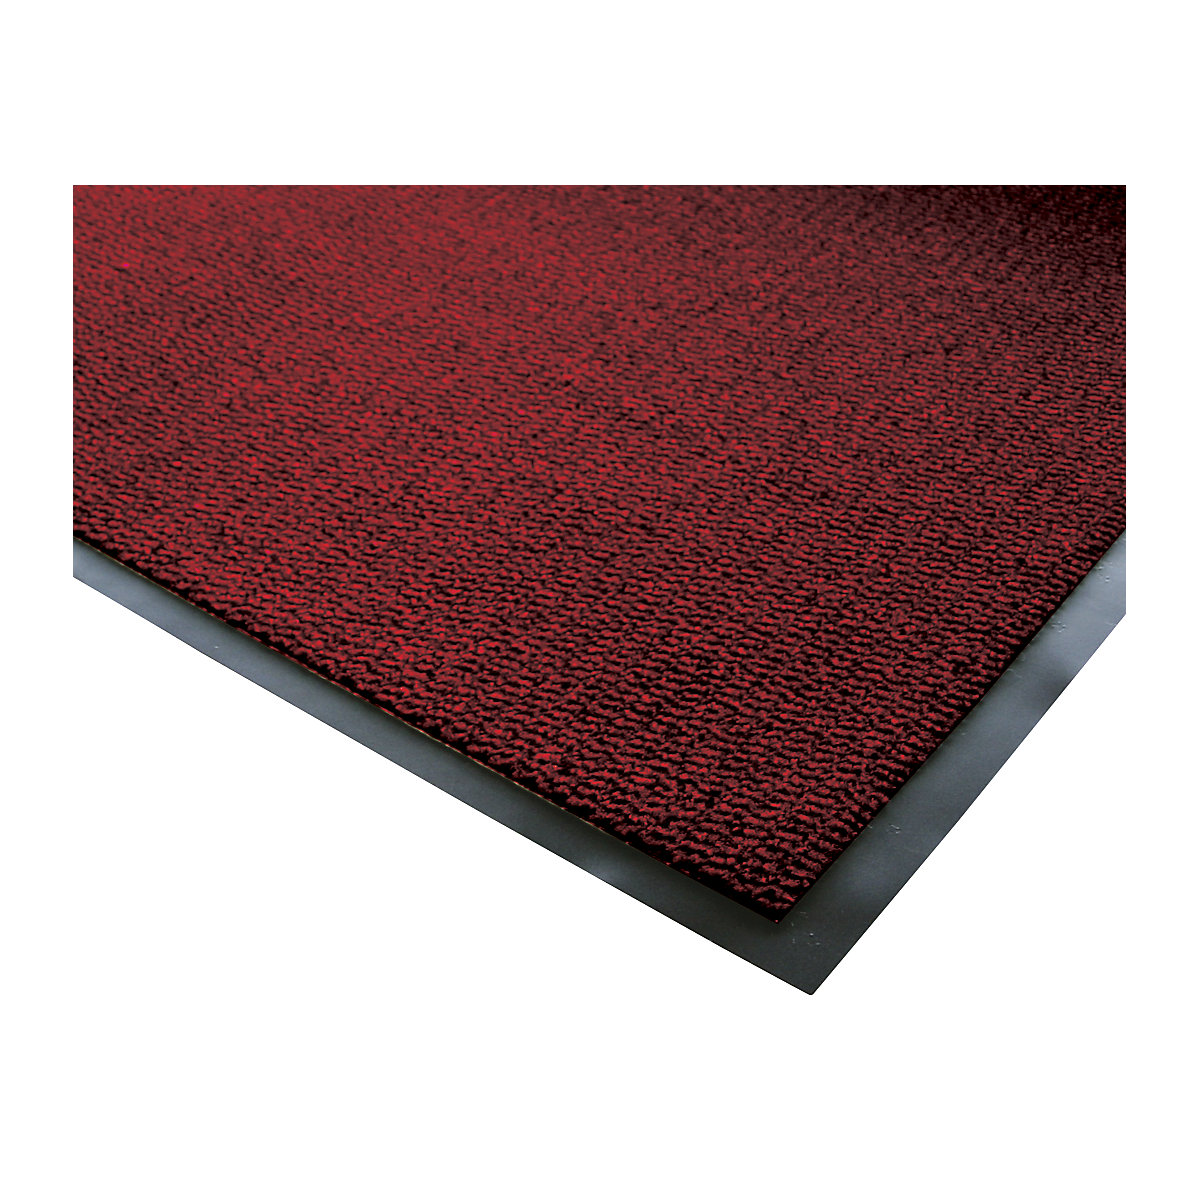 Esteira de retenção de sujidade para interior, pêlo em polipropileno, CxL 1500 x 900 mm, preto / vermelho